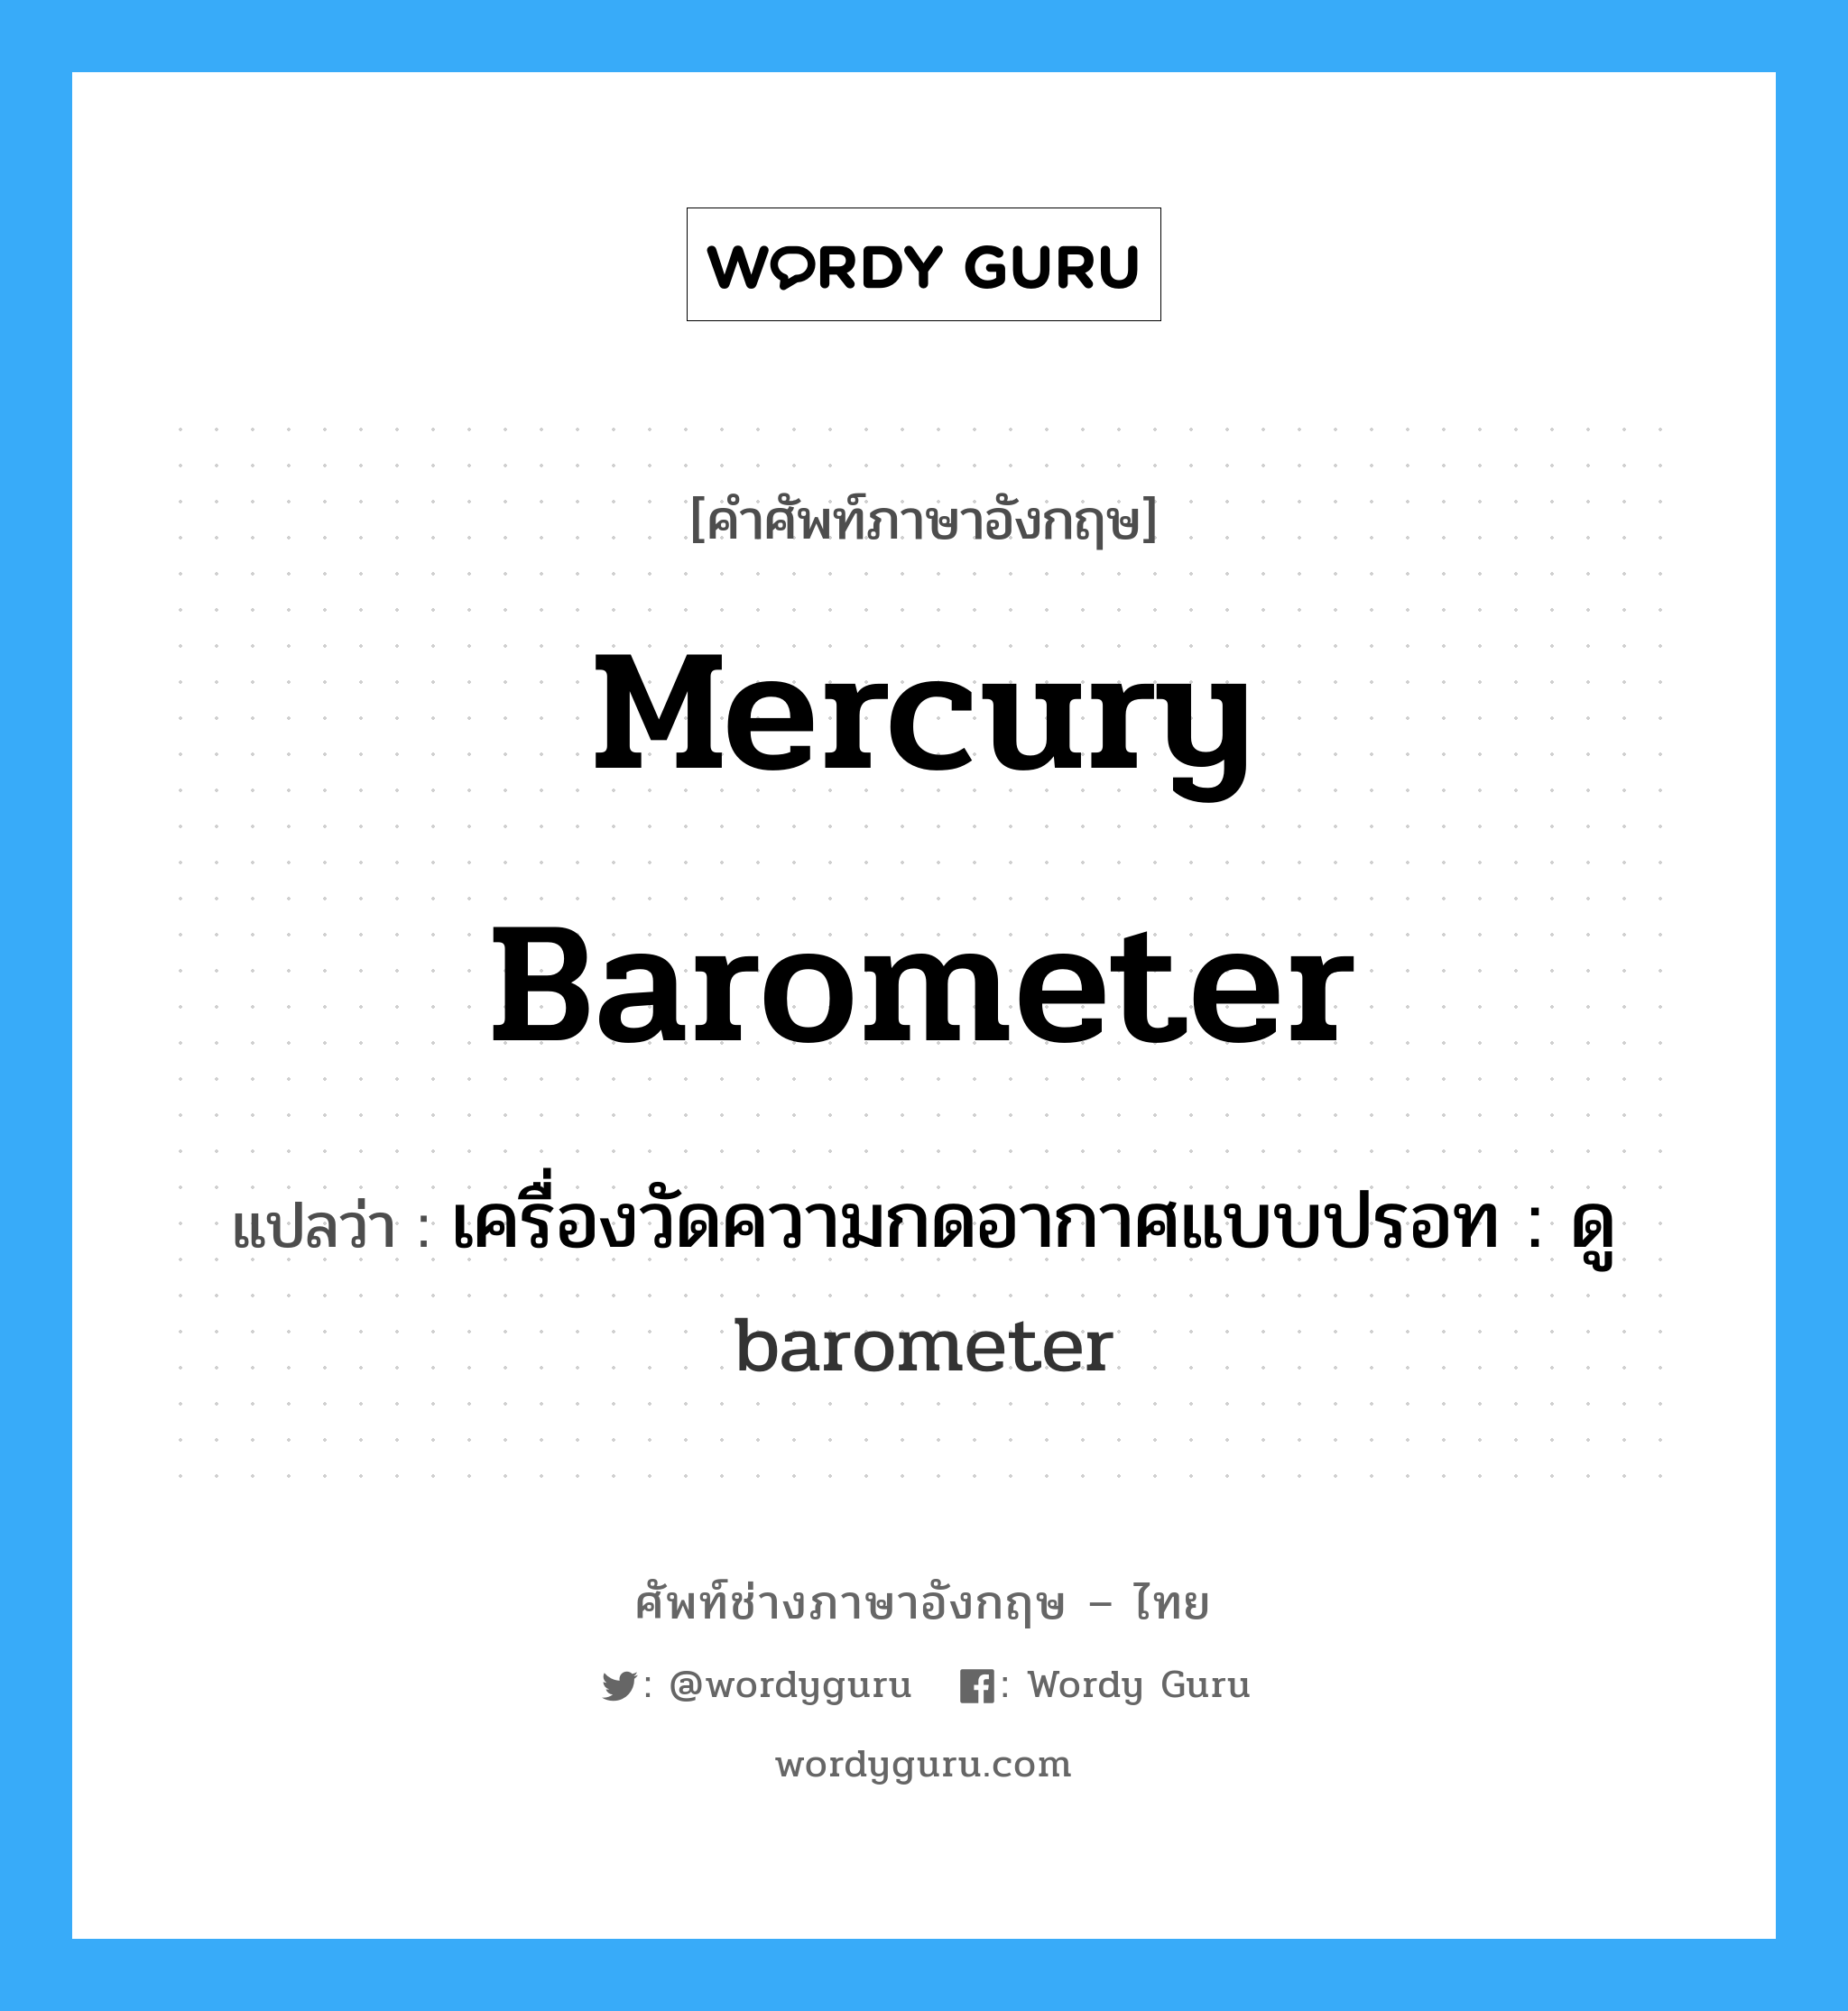 เครื่องวัดความกดอากาศแบบปรอท : ดู barometer ภาษาอังกฤษ?, คำศัพท์ช่างภาษาอังกฤษ - ไทย เครื่องวัดความกดอากาศแบบปรอท : ดู barometer คำศัพท์ภาษาอังกฤษ เครื่องวัดความกดอากาศแบบปรอท : ดู barometer แปลว่า mercury barometer